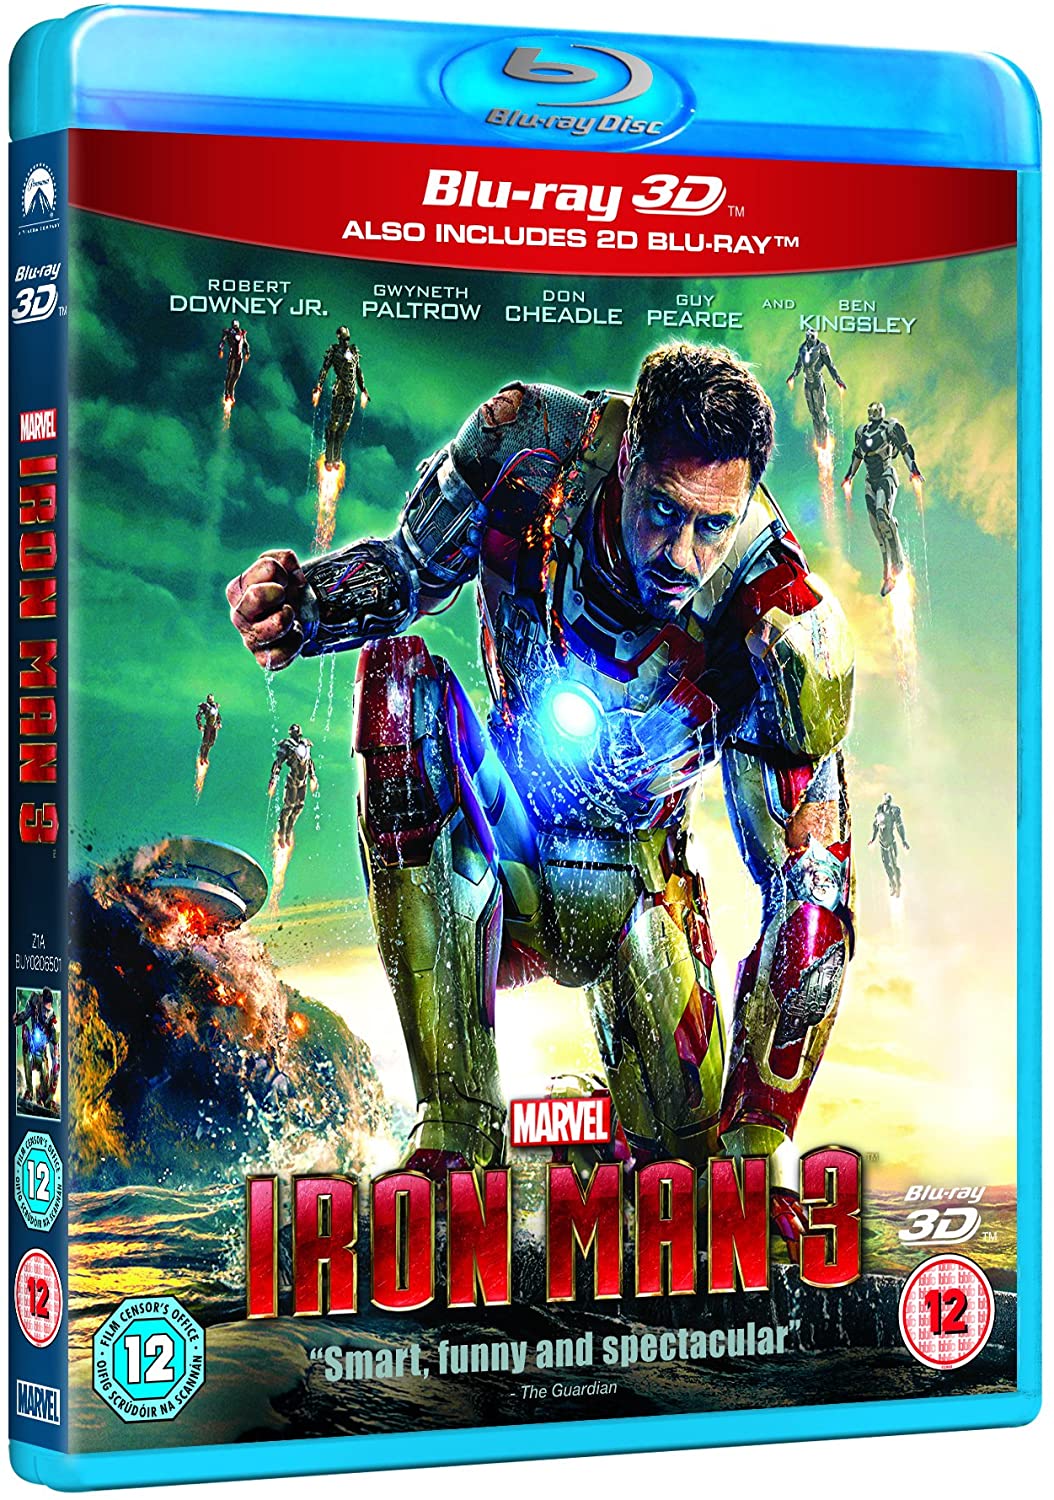 Iron Man 3 [Blu-ray 3D + Blu-ray] [Region Free]